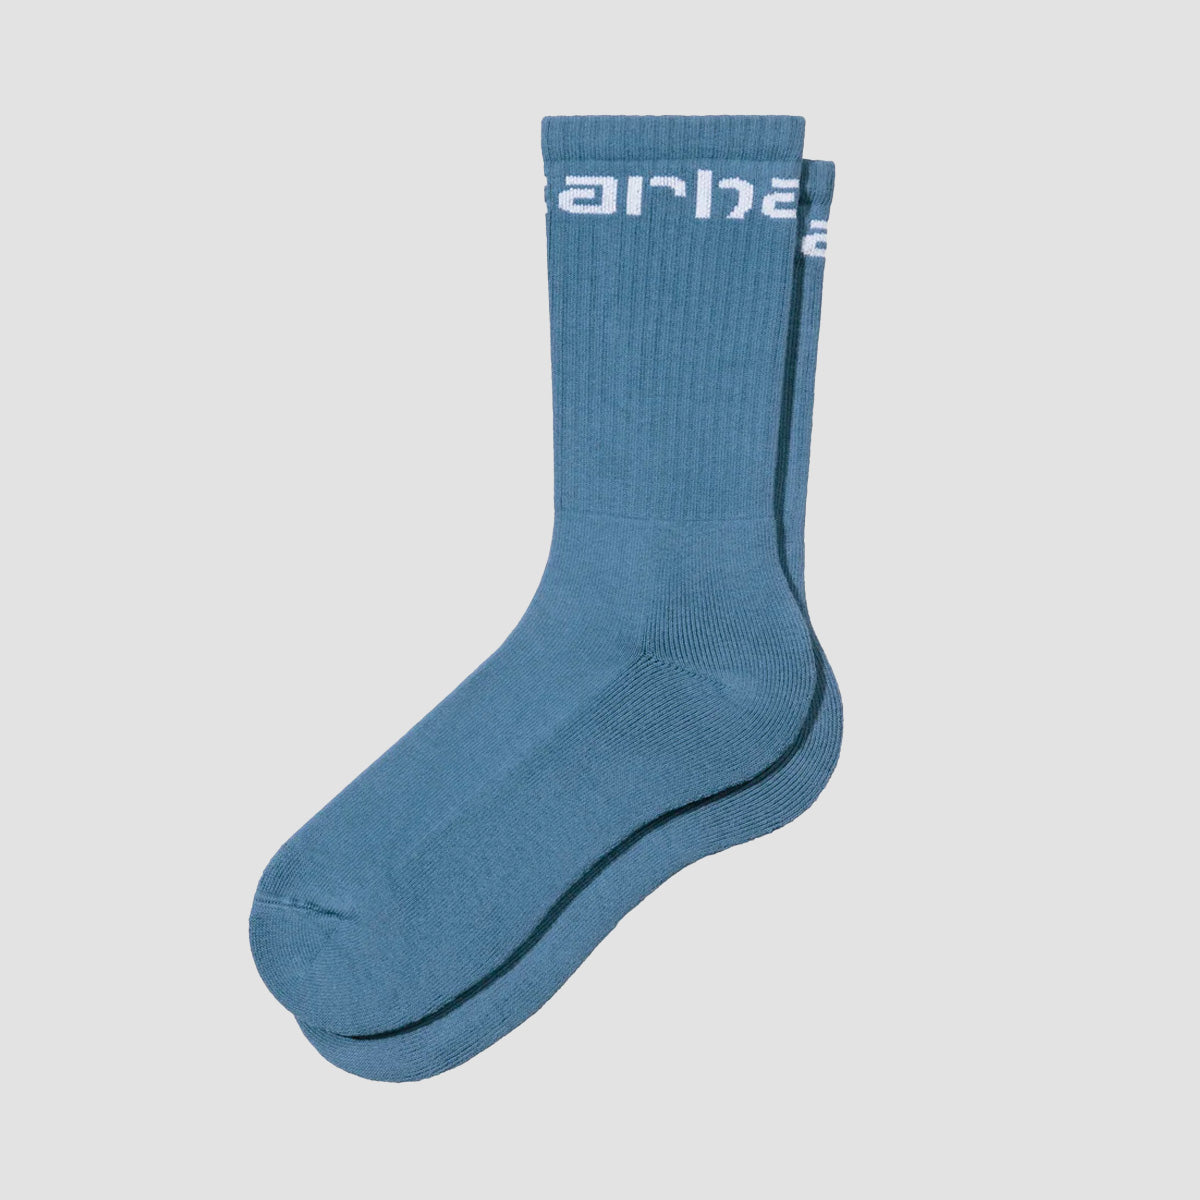 Carhartt WIP Carhartt Socks Sorrent/White